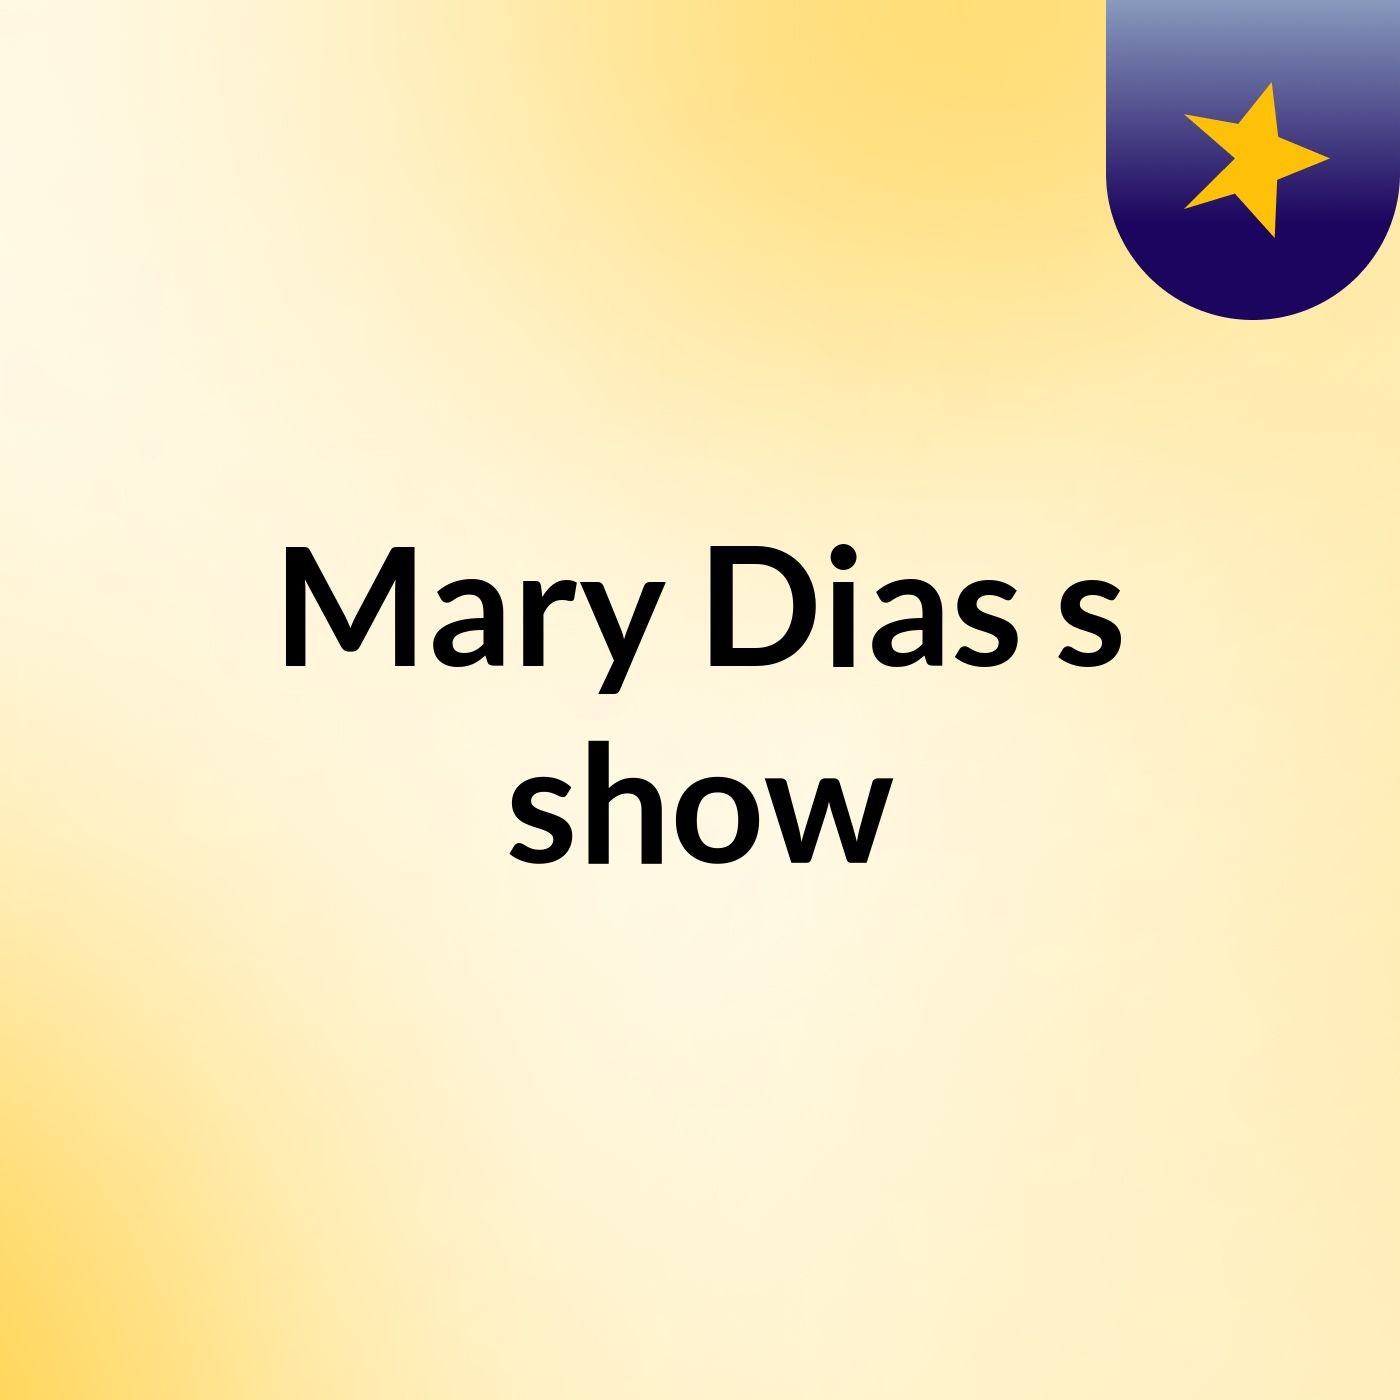 Mary Dias's show